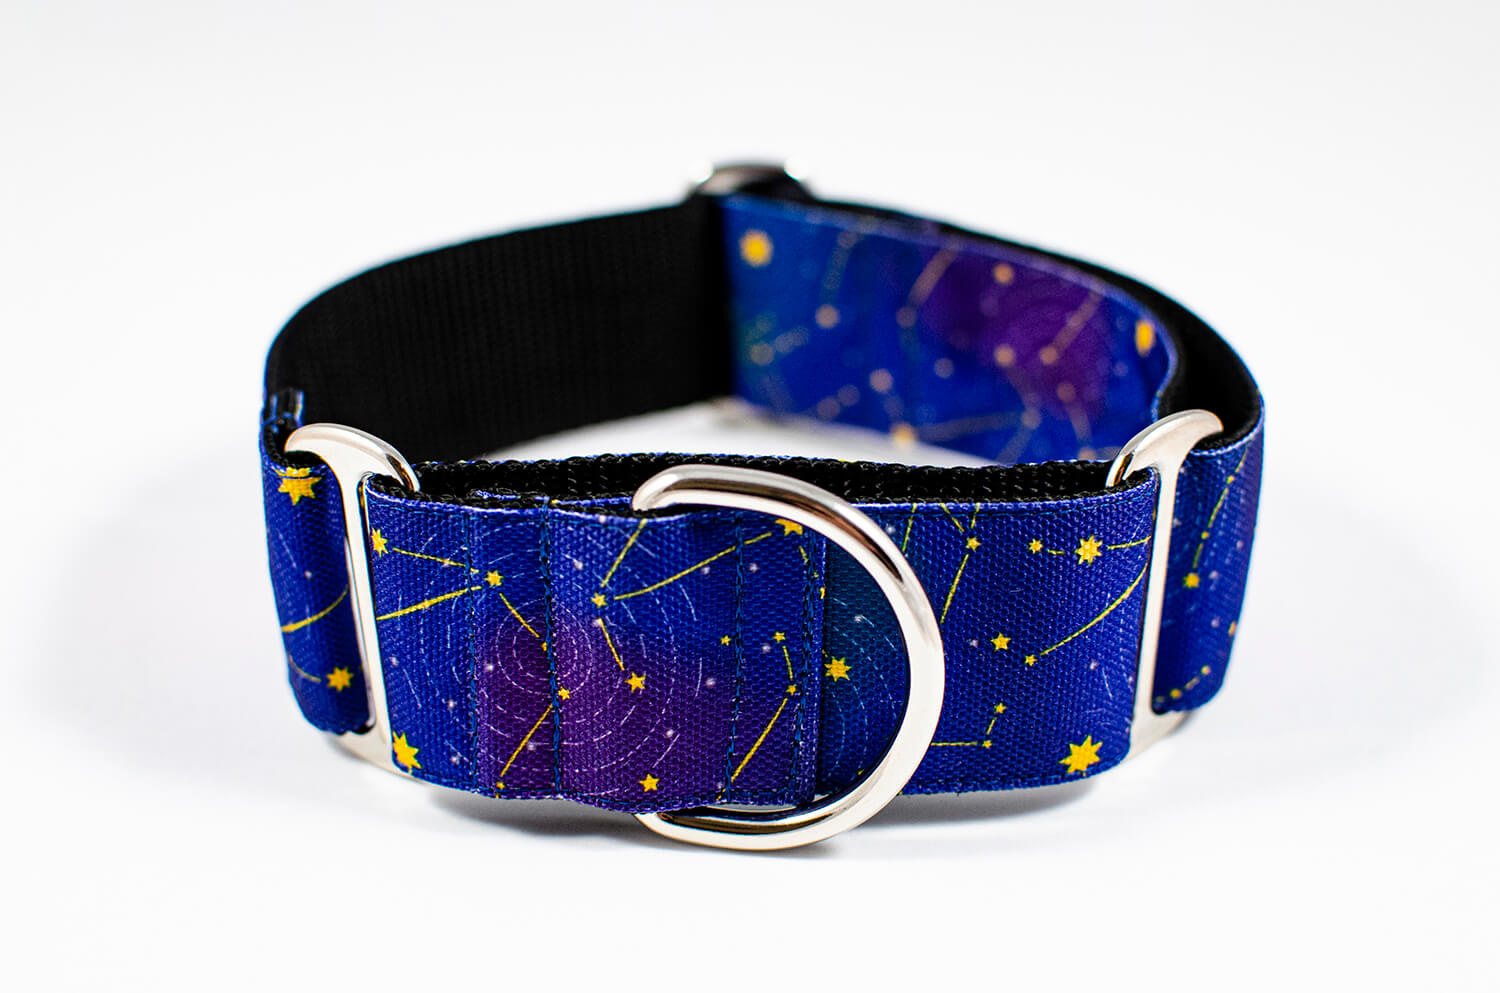 Mély lila színű csillag mintás félfojtó kutya nyakörv - Stardust Flowdog nyakörv - Egyedi félfojtó nyakörv